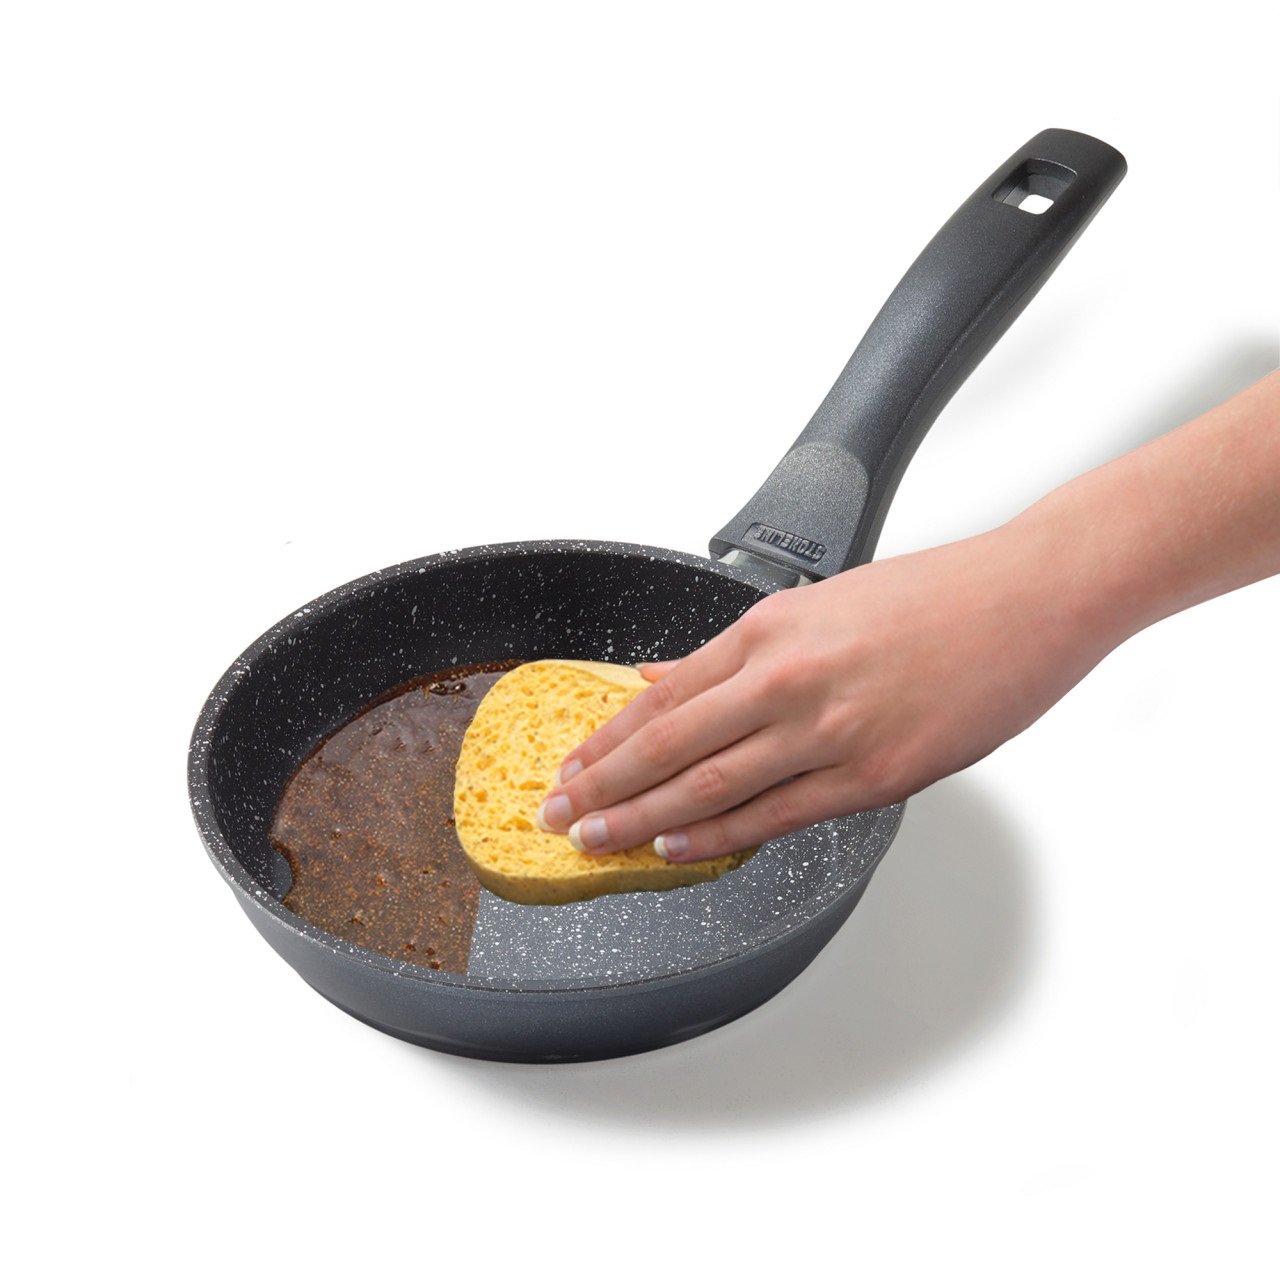 STONELINE® sartén 16 cm, sartén antiadherente para tortillas, apta para horno e inducción